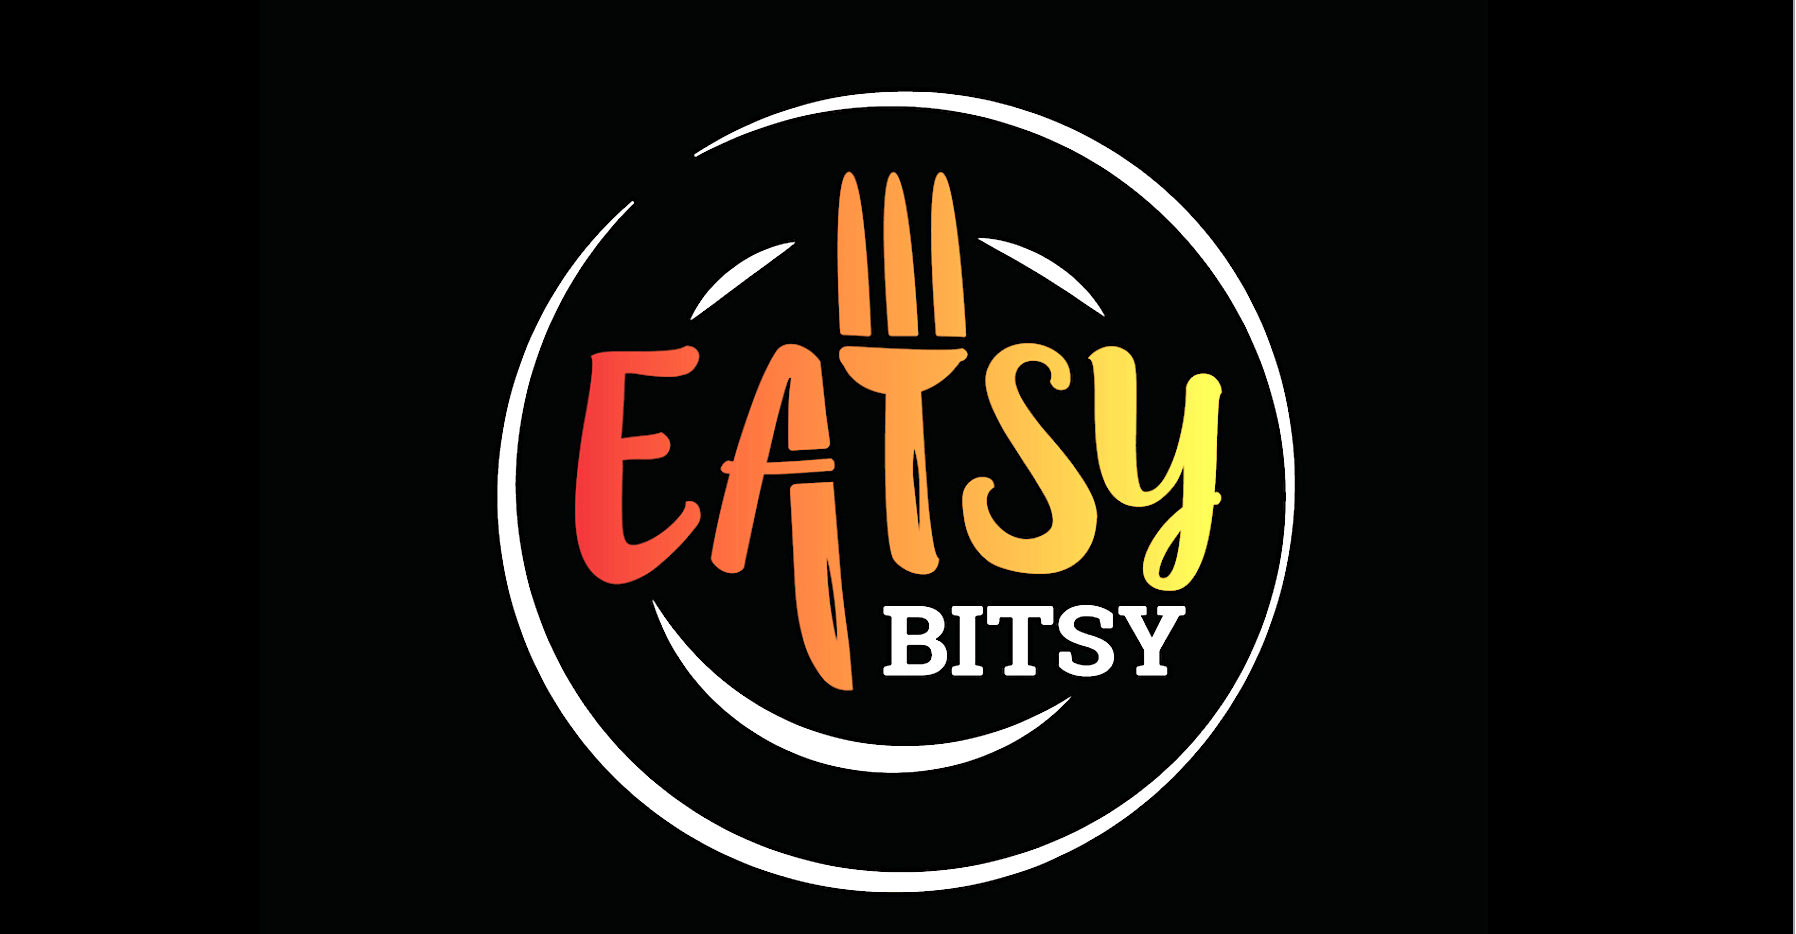 eatsy-bitsy-logo